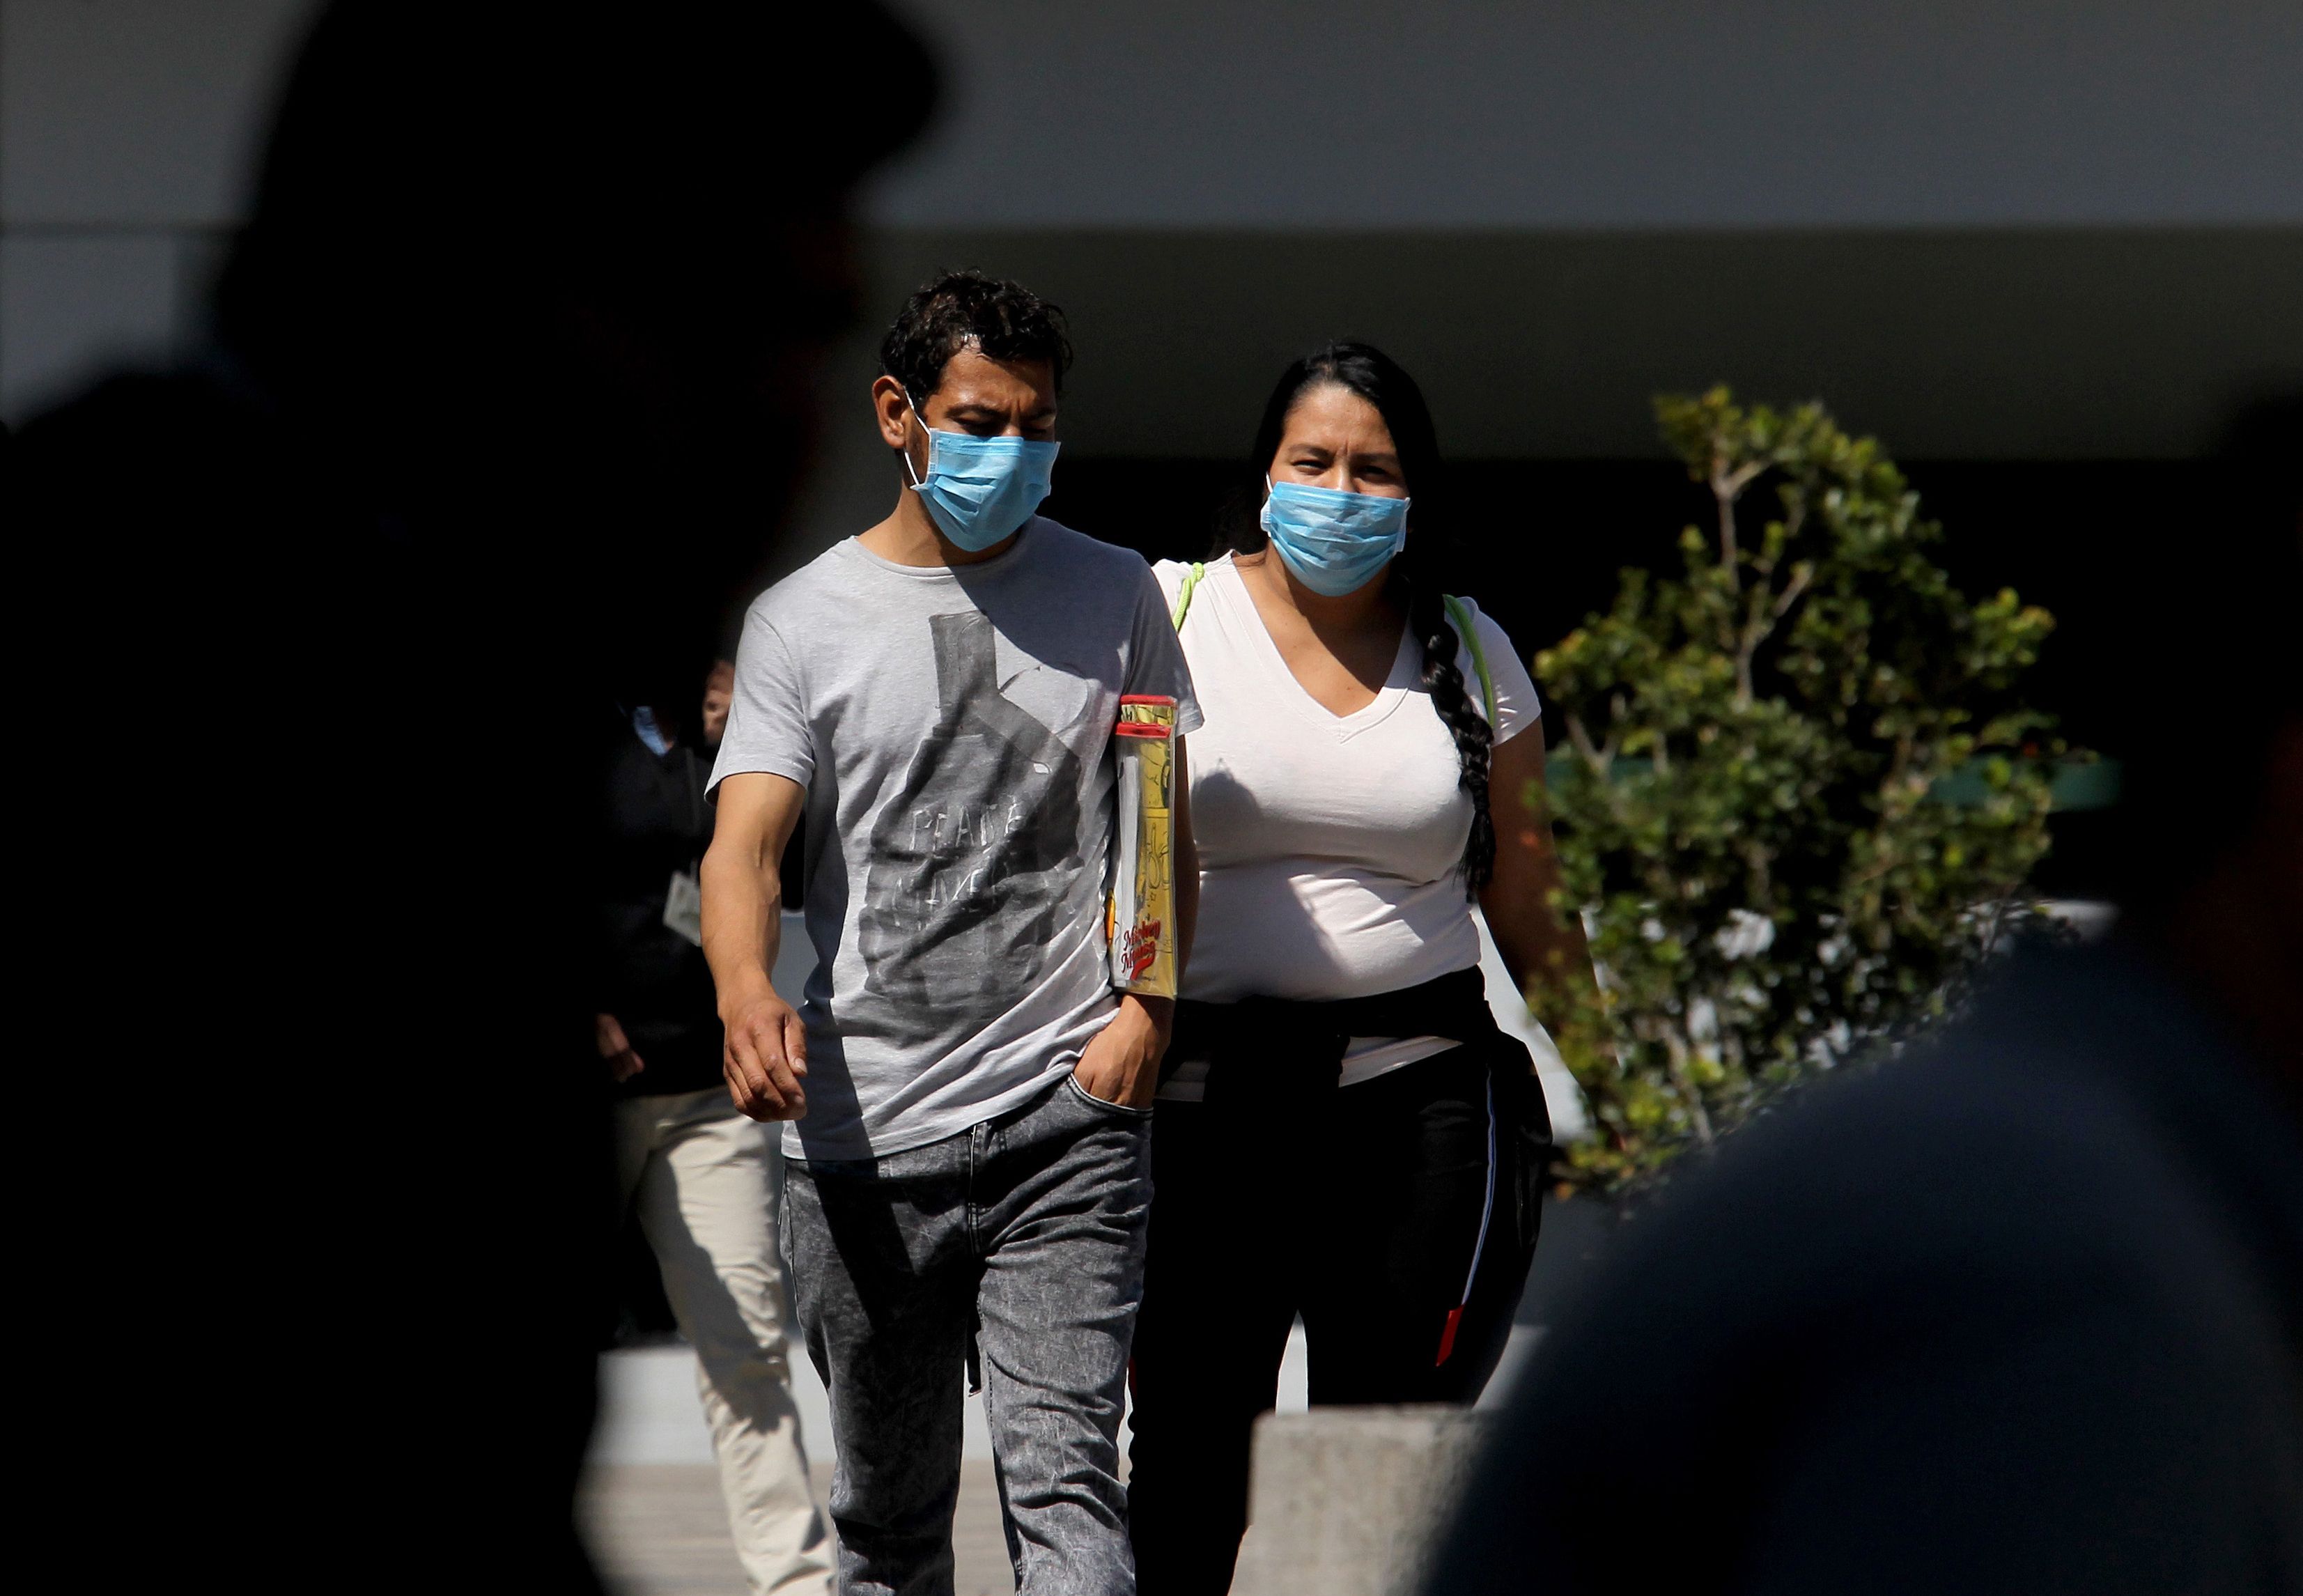 En Guadalajara la gente porta mascarillas  para evitar contagiarse del coronavirus debido al caso confirmado en México. Las autoridades de Salud de Guatemala indican que en el país aún no es necesario portar mascarillas. (Foto Prensa Libre: AFP)